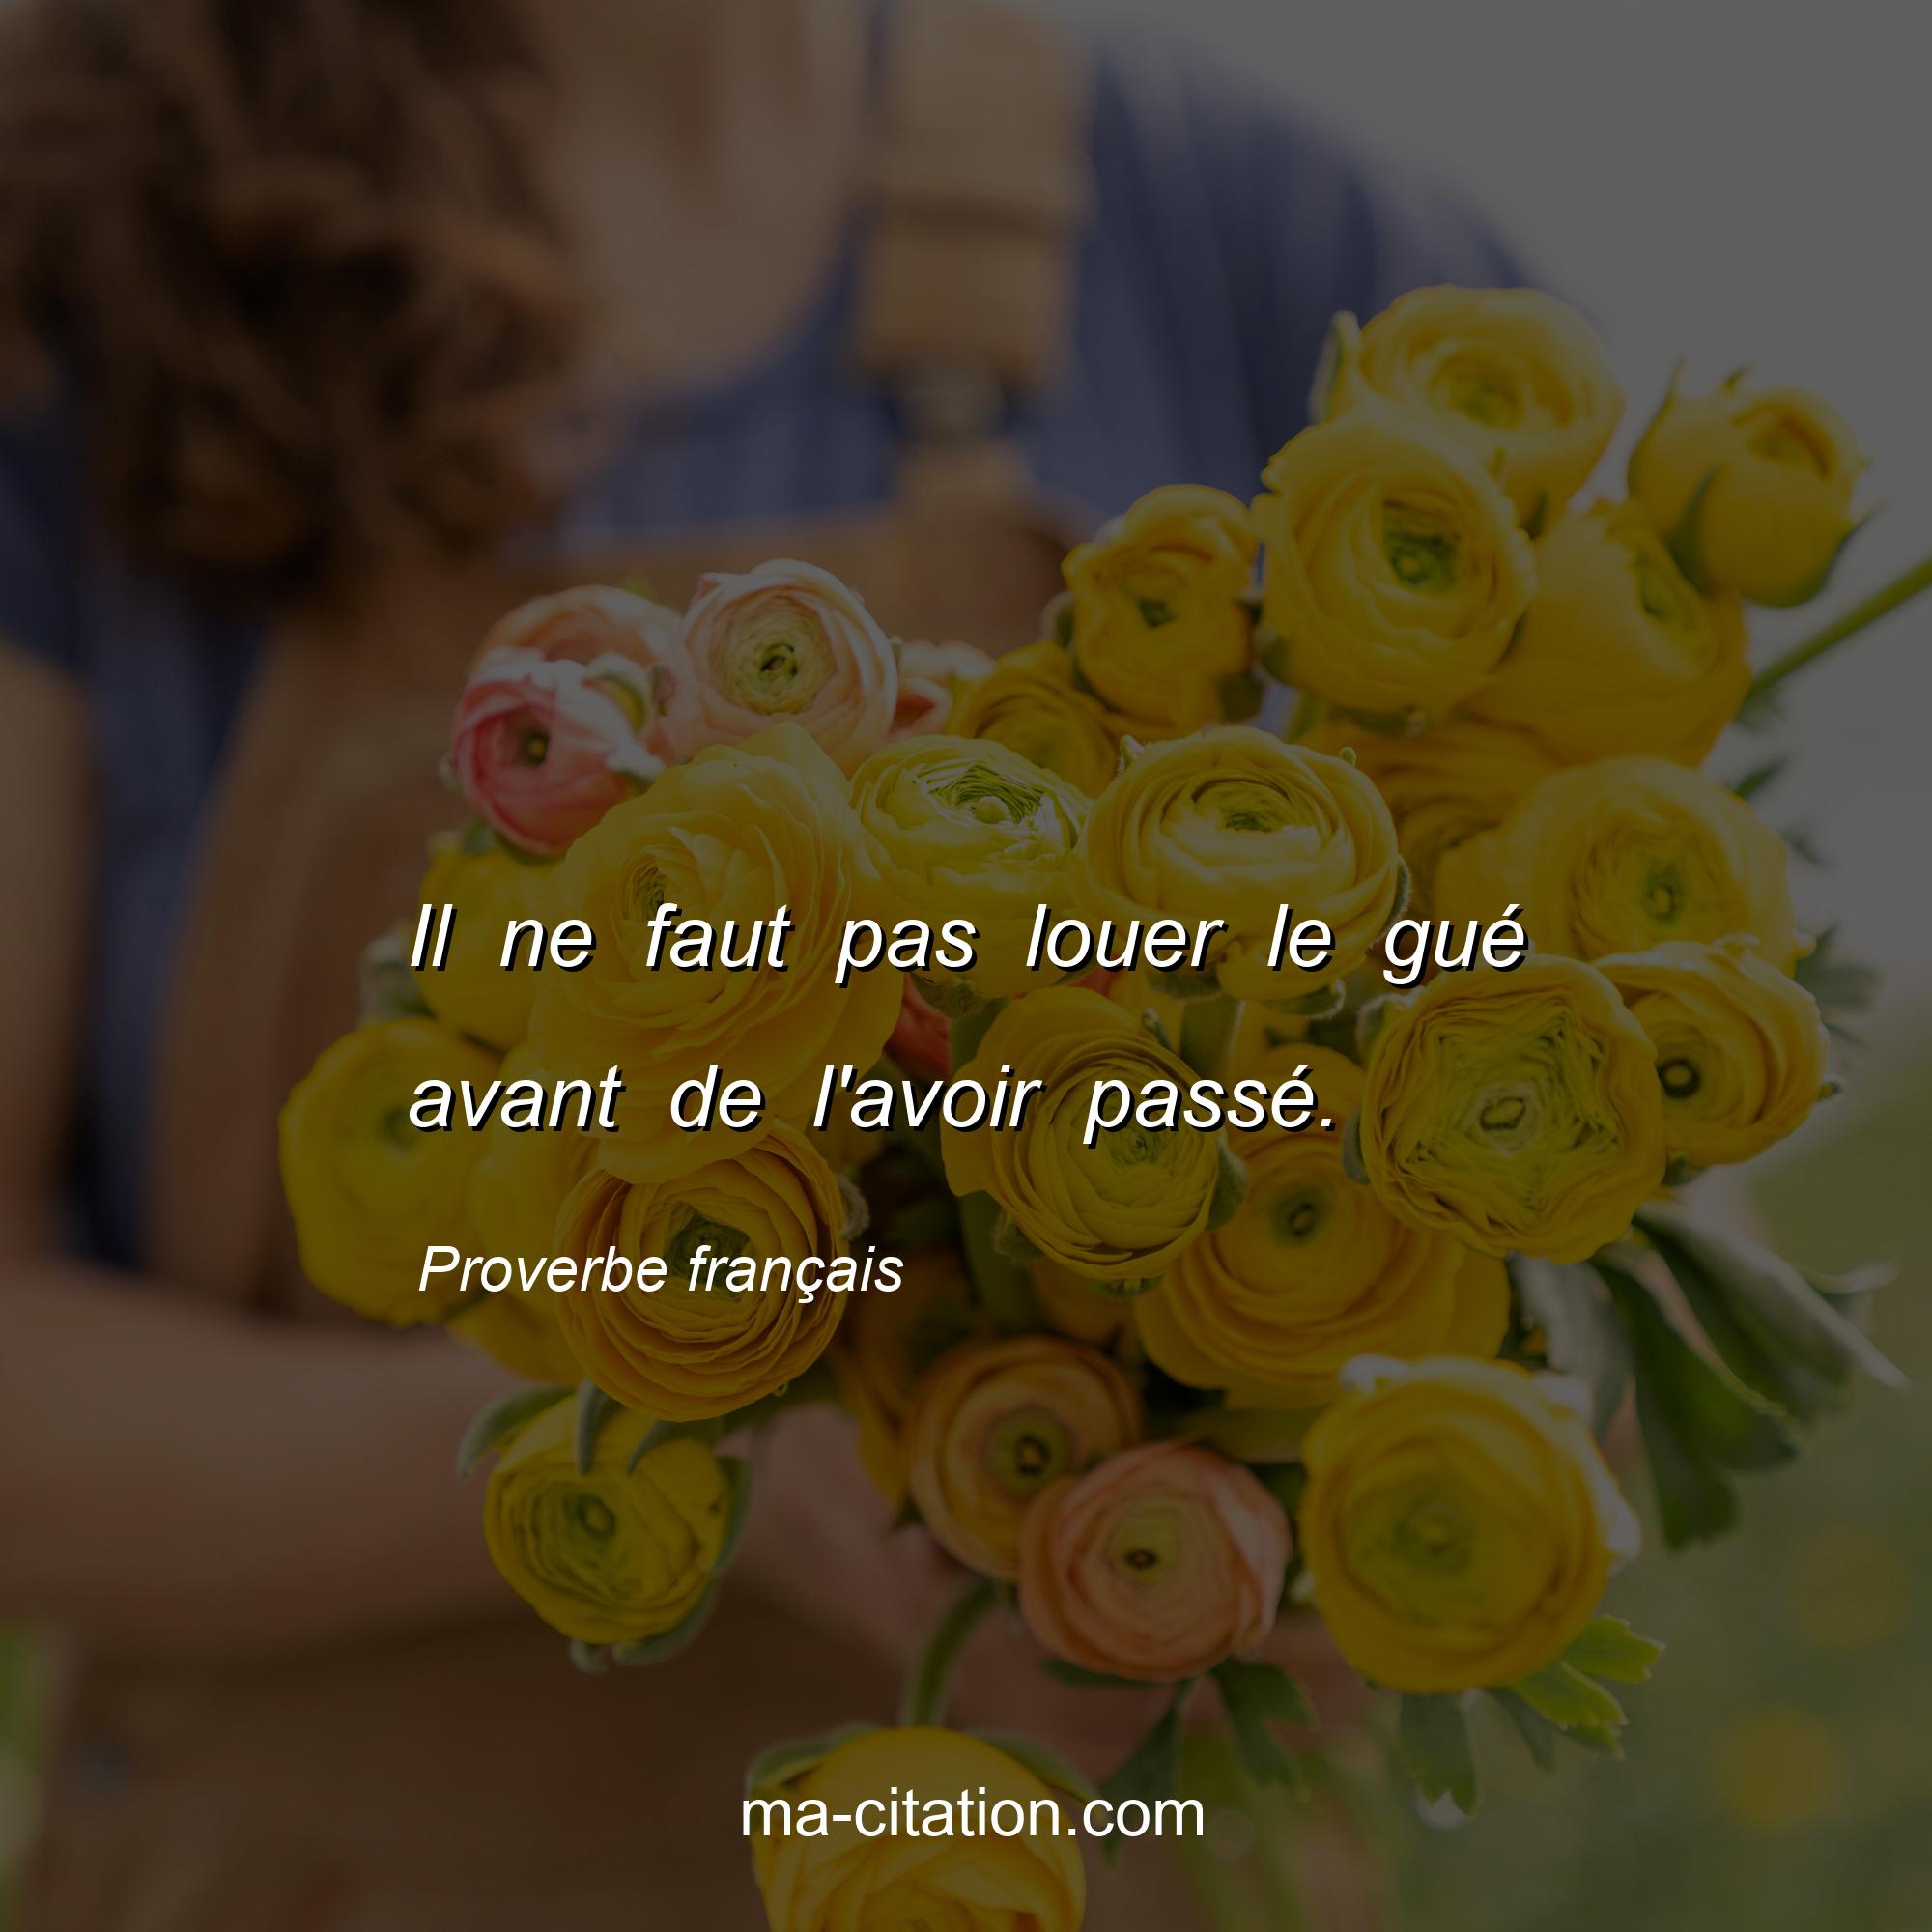 Proverbe français : Il ne faut pas louer le gué avant de l'avoir passé.